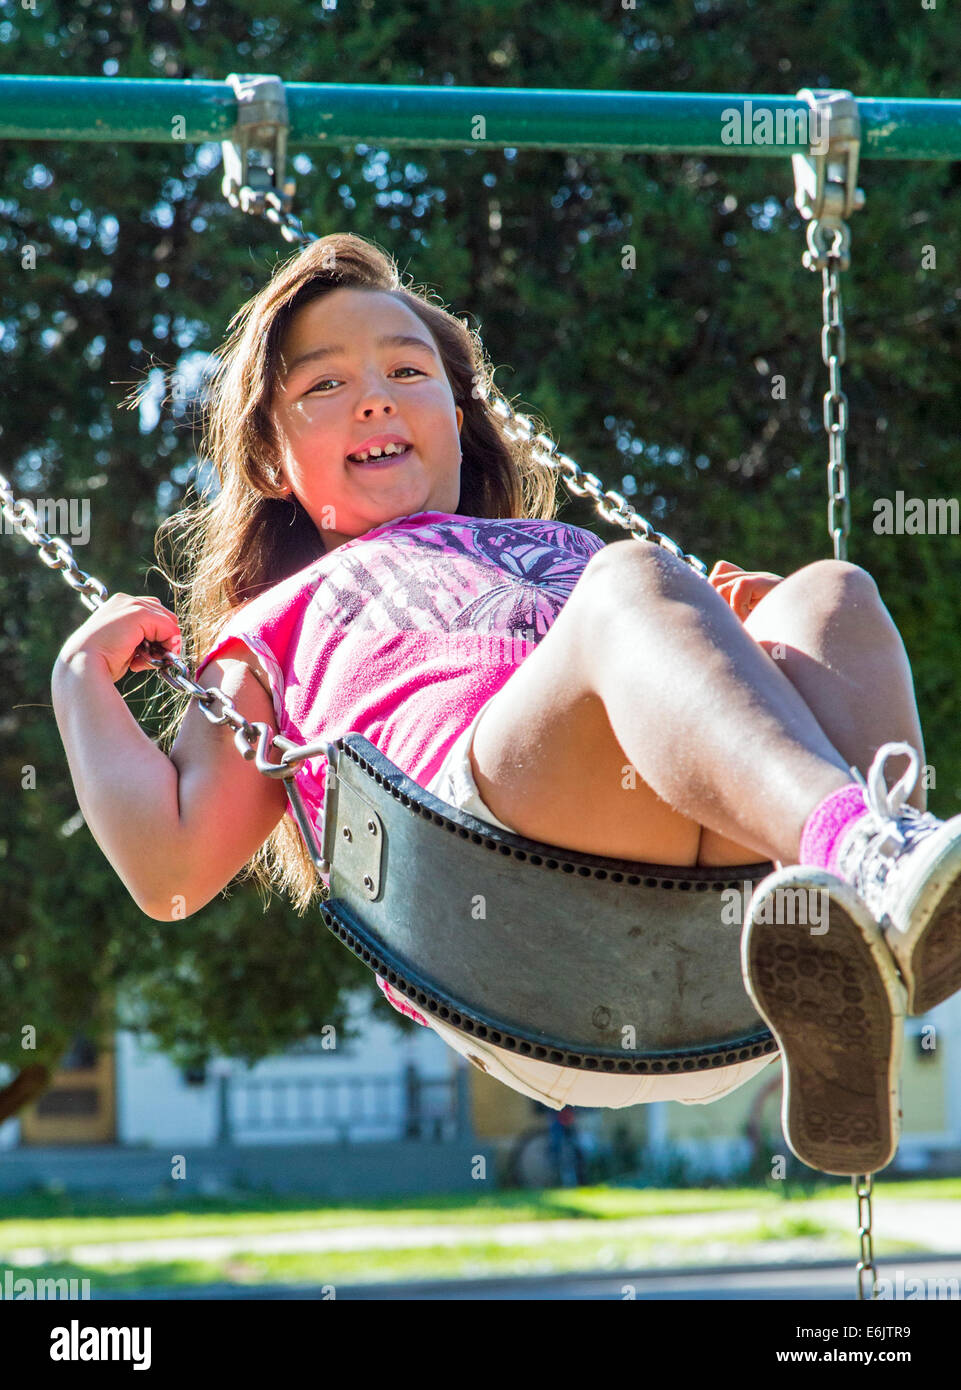 Photographie d'été de sept ans, fille, sur une aire de swing Banque D'Images